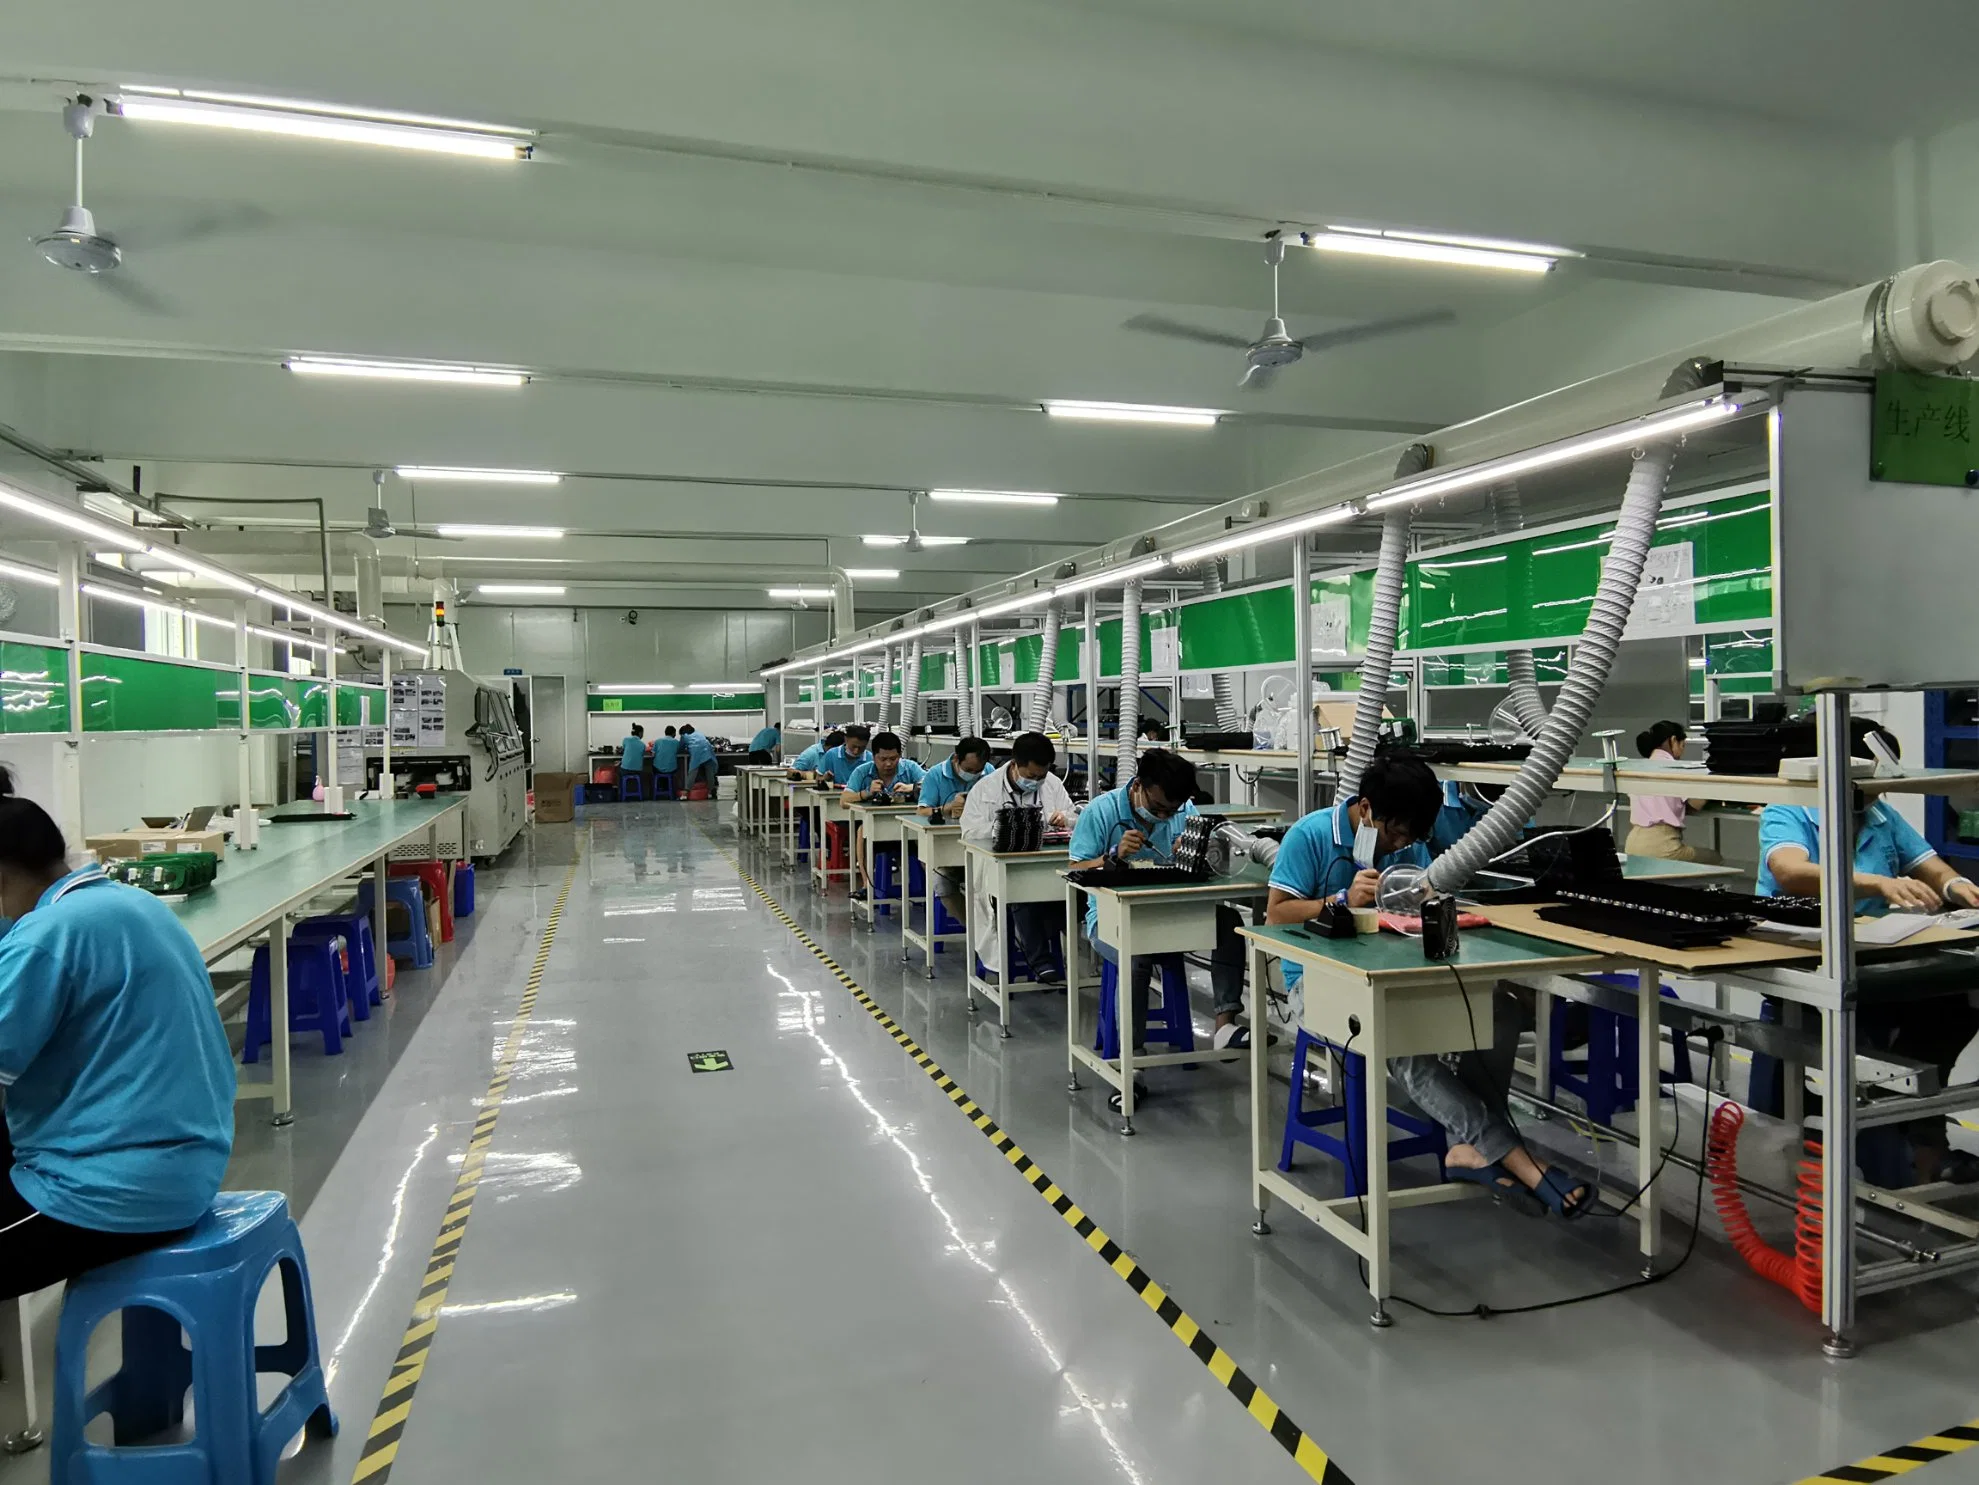 6 многоуровневая монтажная плата для печатных плат на заводе взаимосвязи печатных плат производственные OEM-производителя взаимосвязи печатных плат